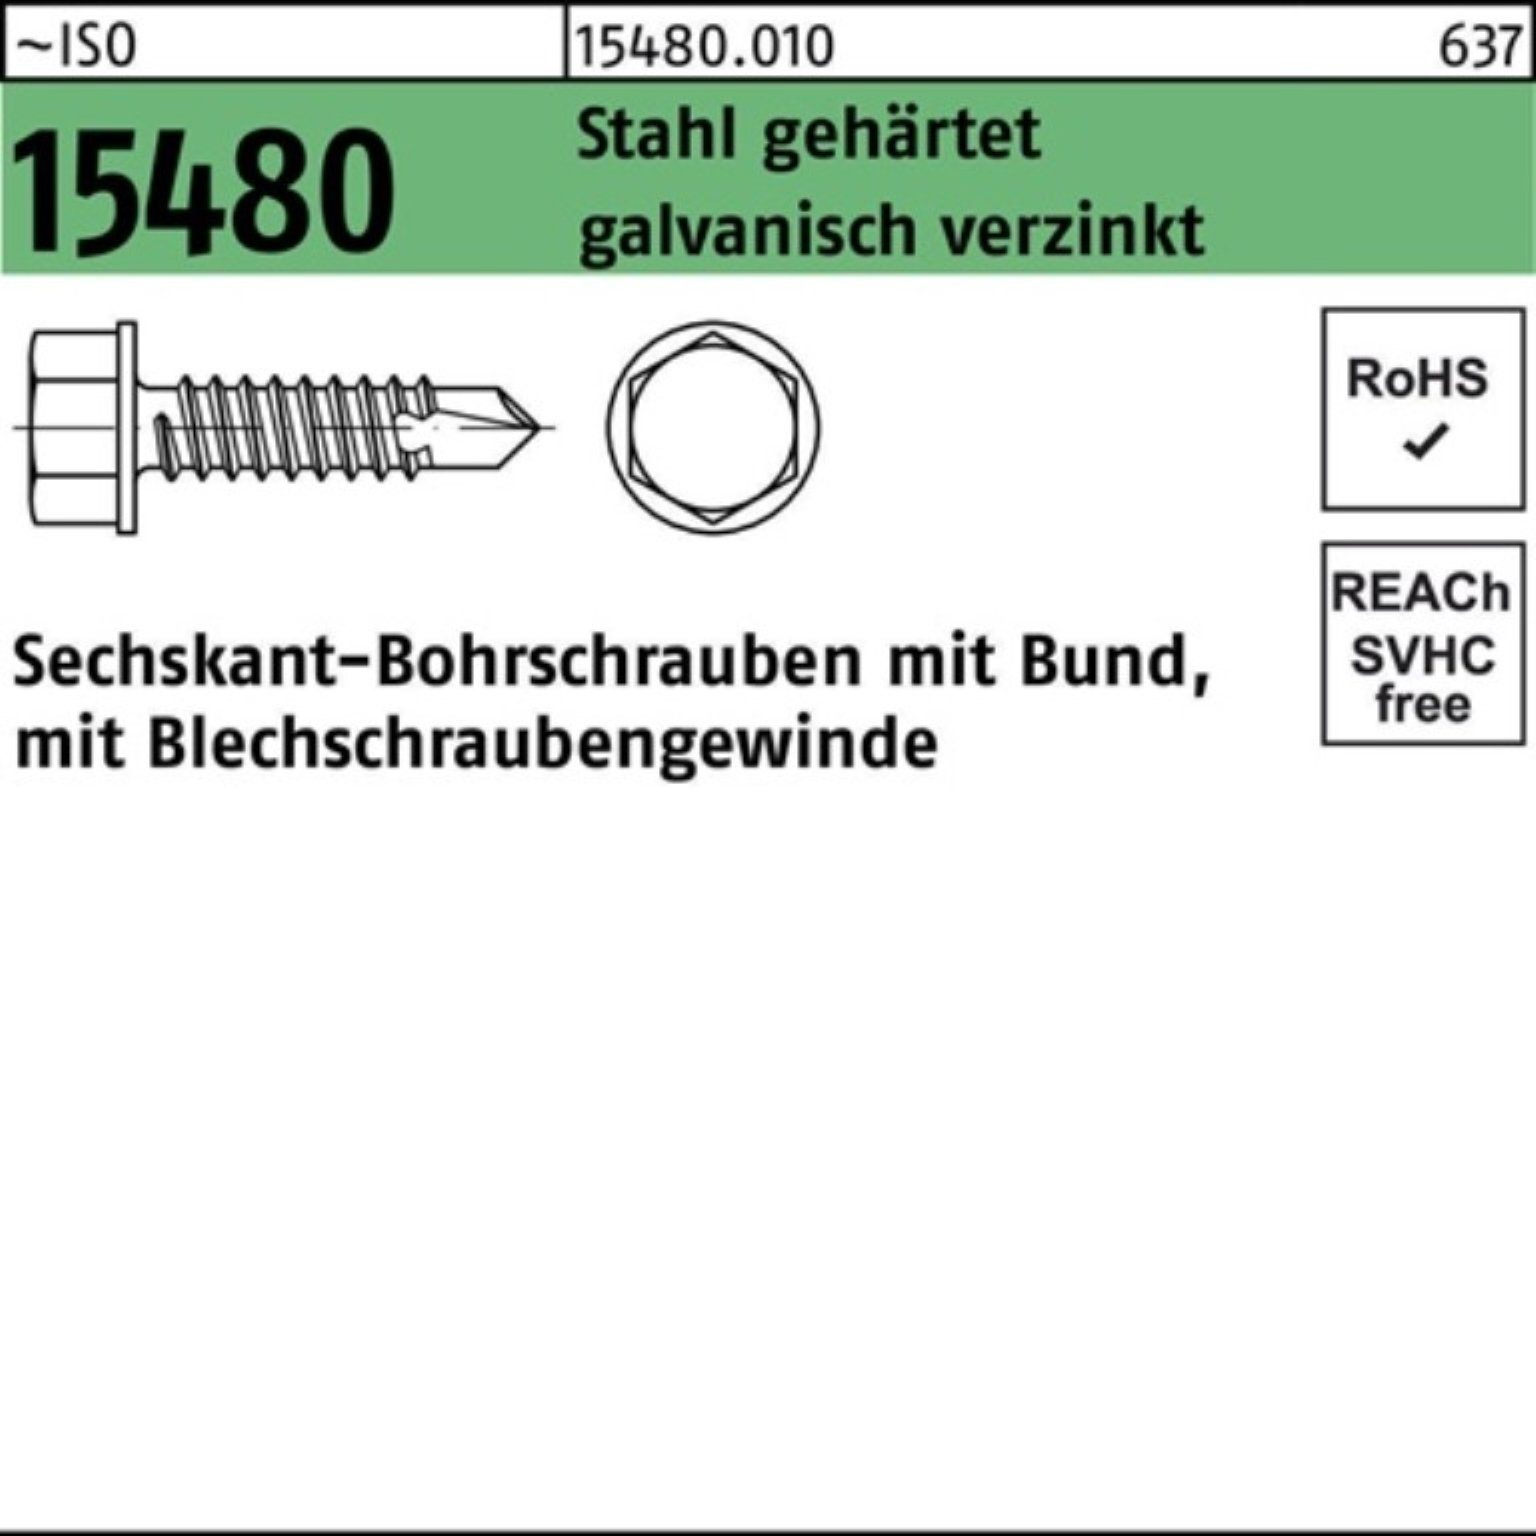 Bund ST Reyher 15480 Bohrschraube gehä ISO Stahl 3,9x16 Sechskantbohrschraube 1000er Pack